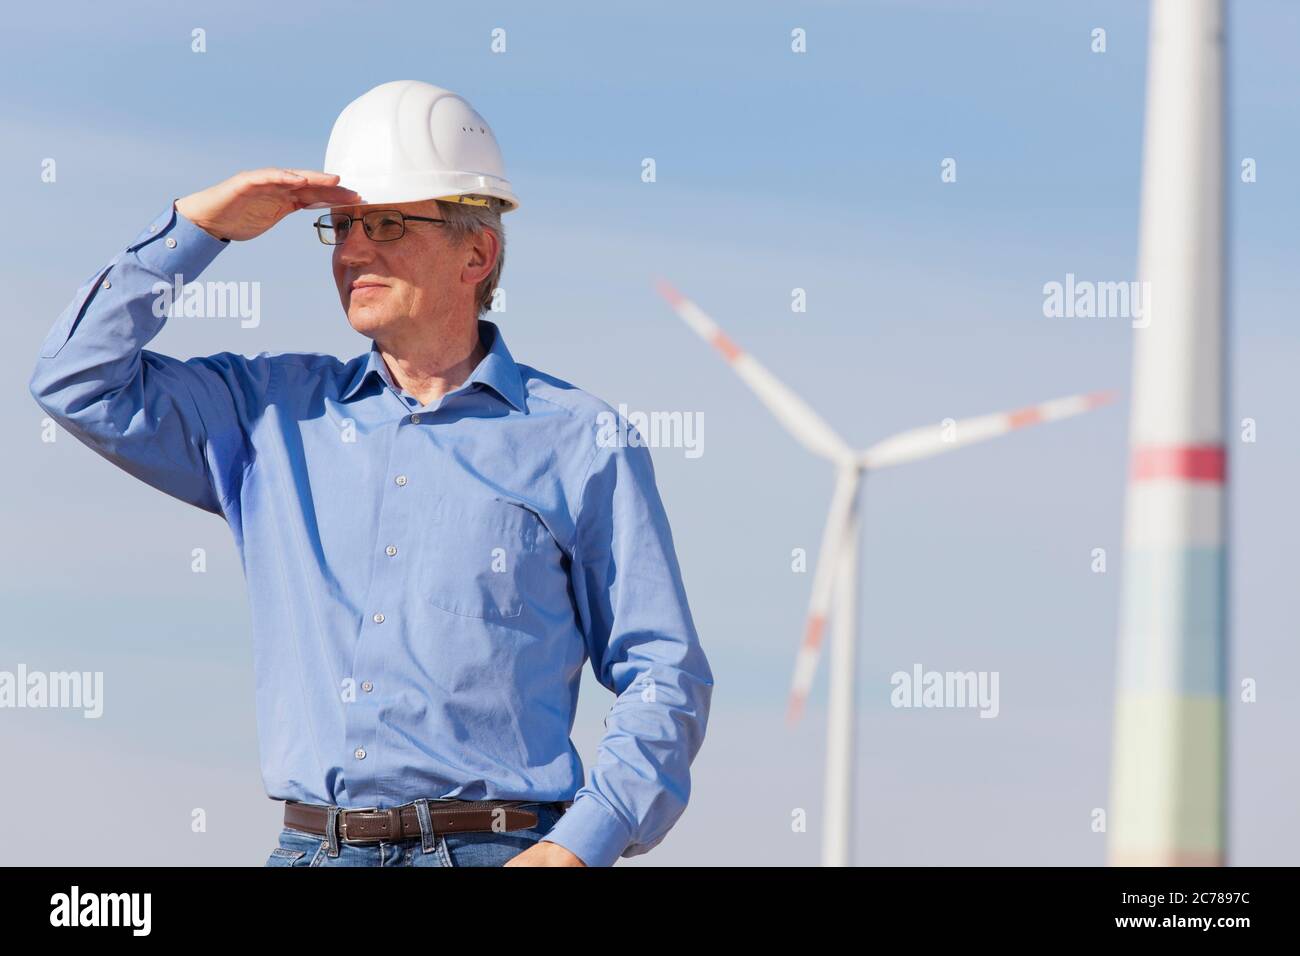 Ingenieur mit Hut vor einem Windpark auf der Suche nach einer strahlenden Zukunft für grüne Energie - konzentrieren Sie sich auf die Person Stockfoto